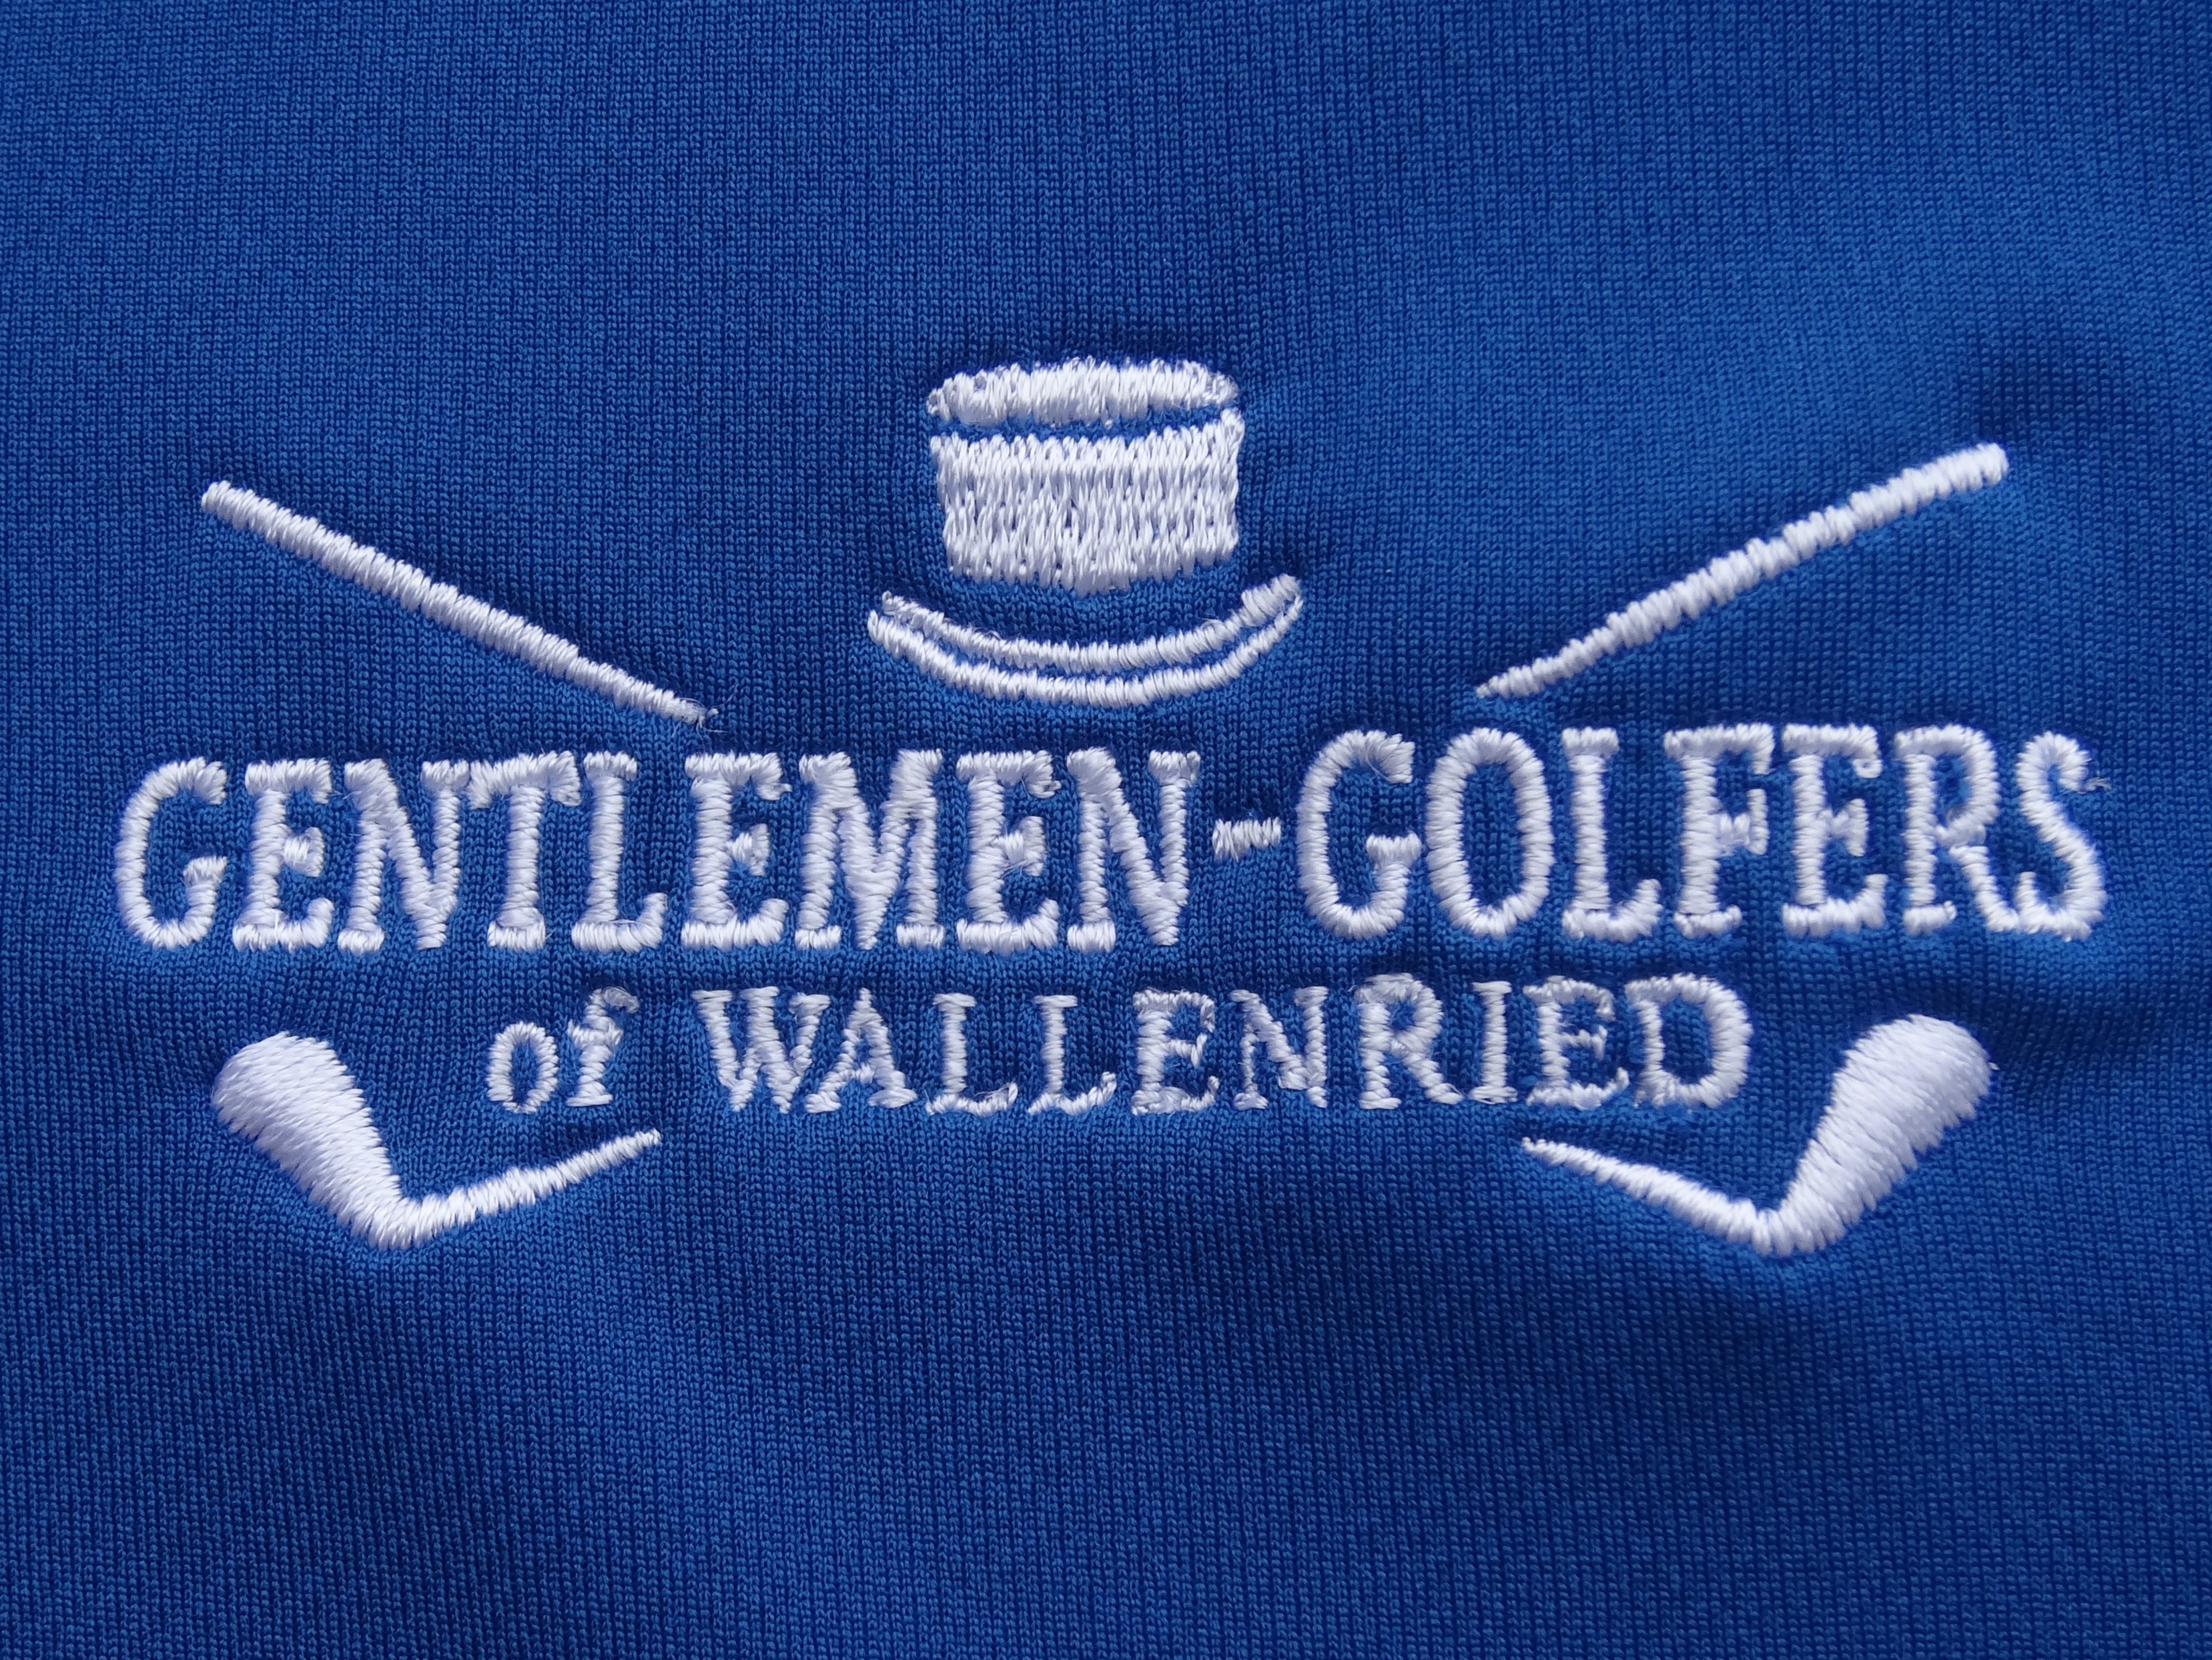 Gentlemen-Golfers